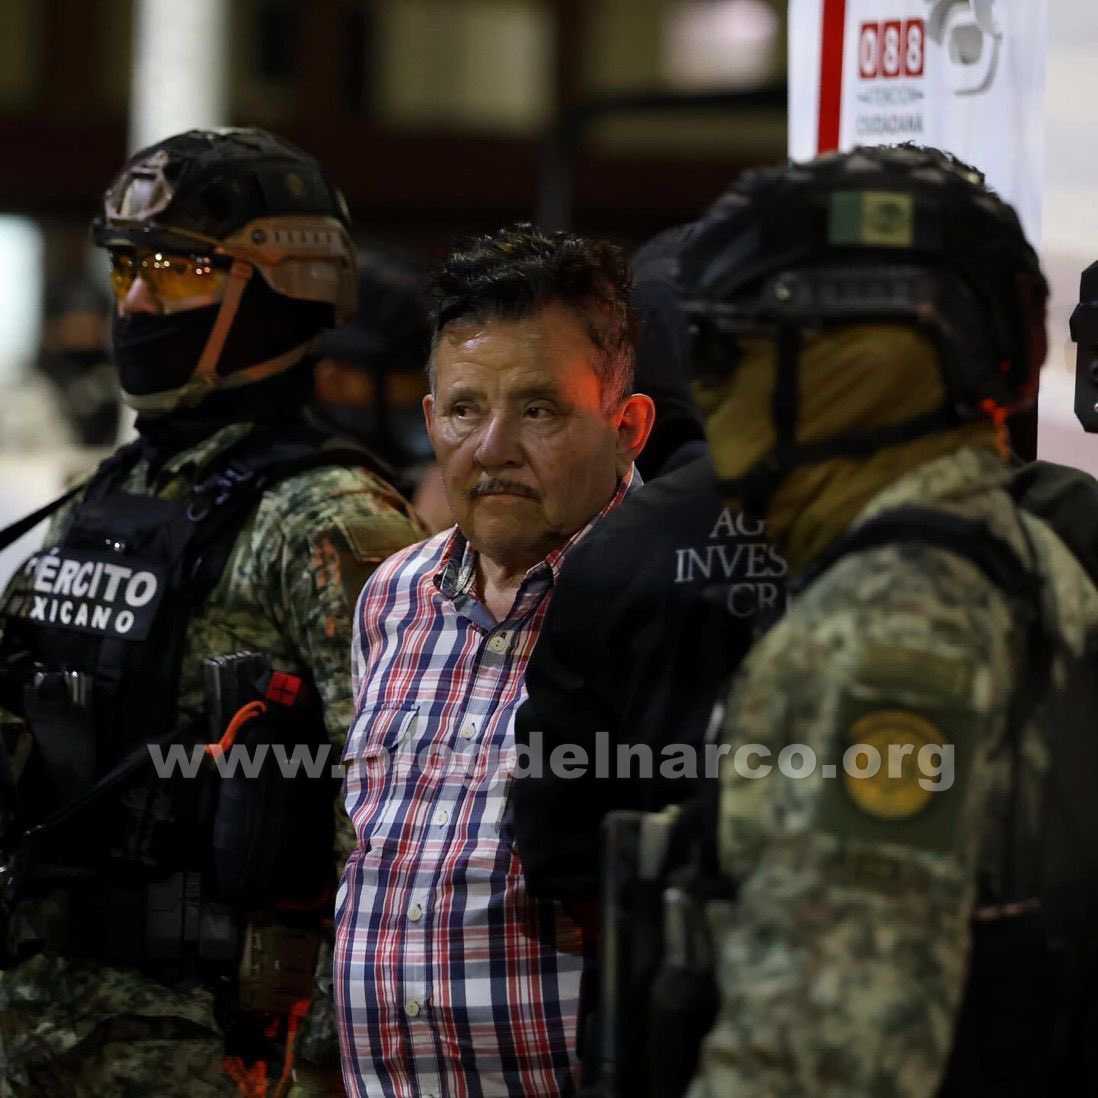 Juez ordena inmediata liberación de "Don Rodo" hermano de "El Mencho", vecinos y Policías Municipales declararon a favor del capo